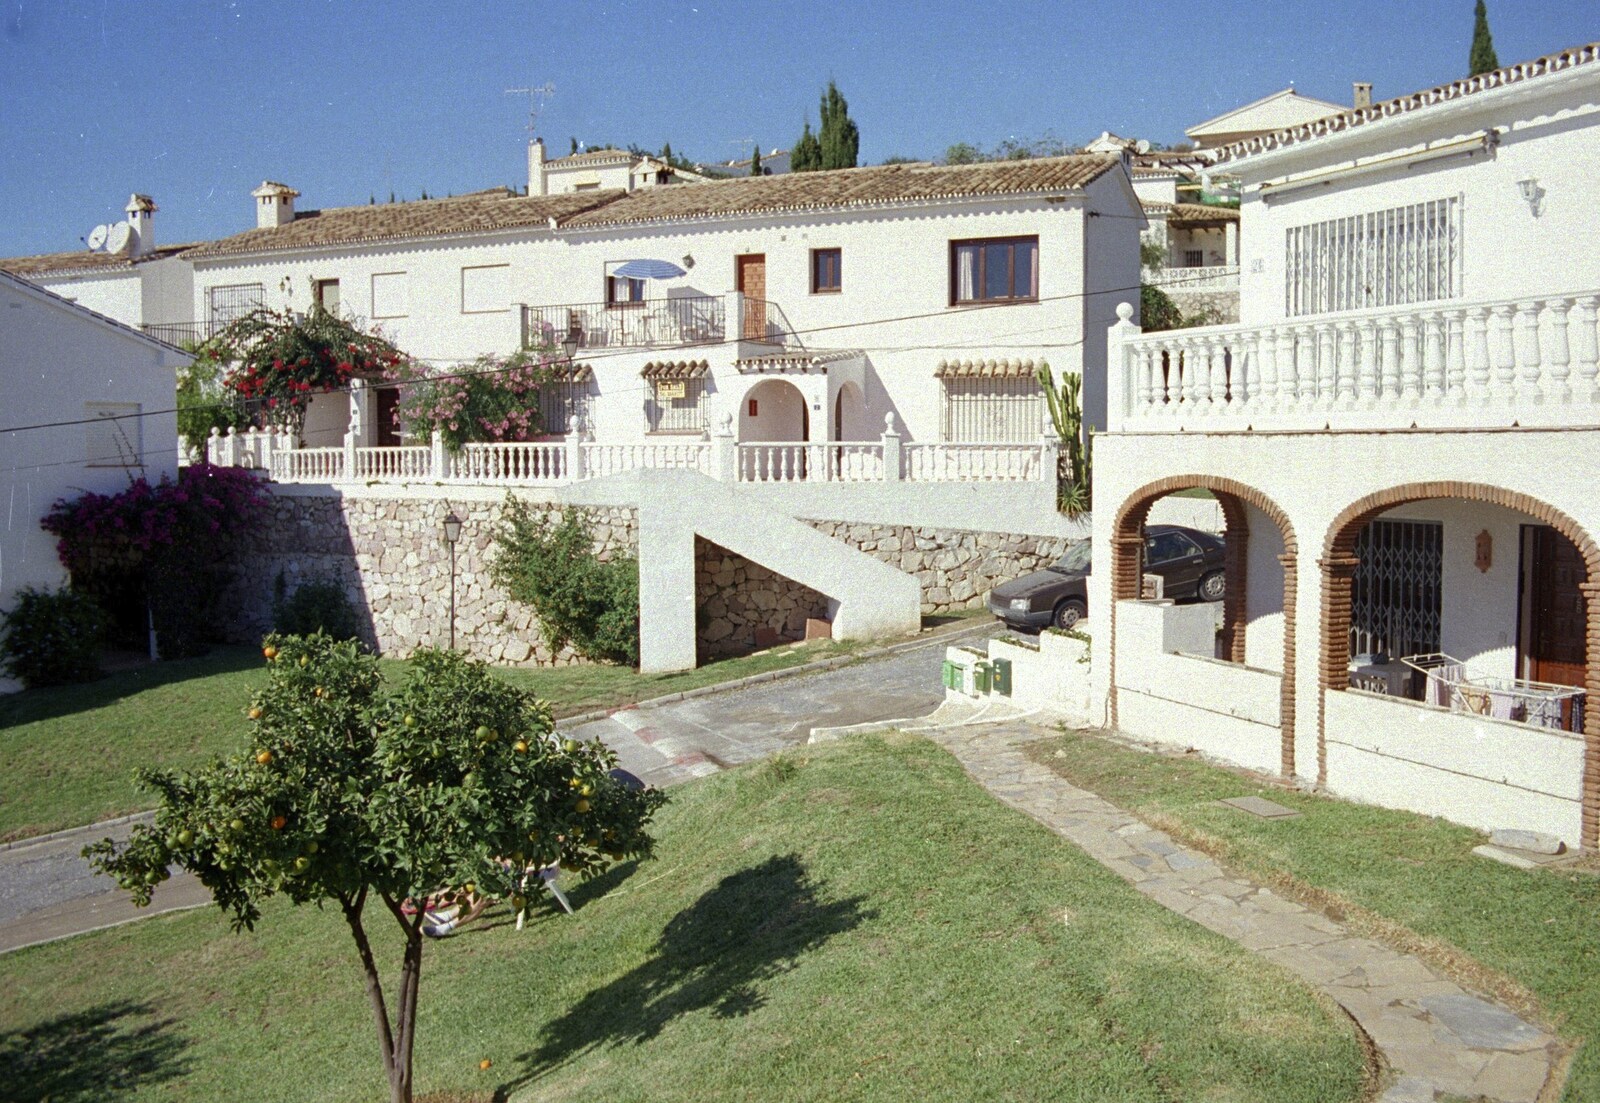 Our villa, right from The CISU Massive do Malaga, Spain - November 14th 1998